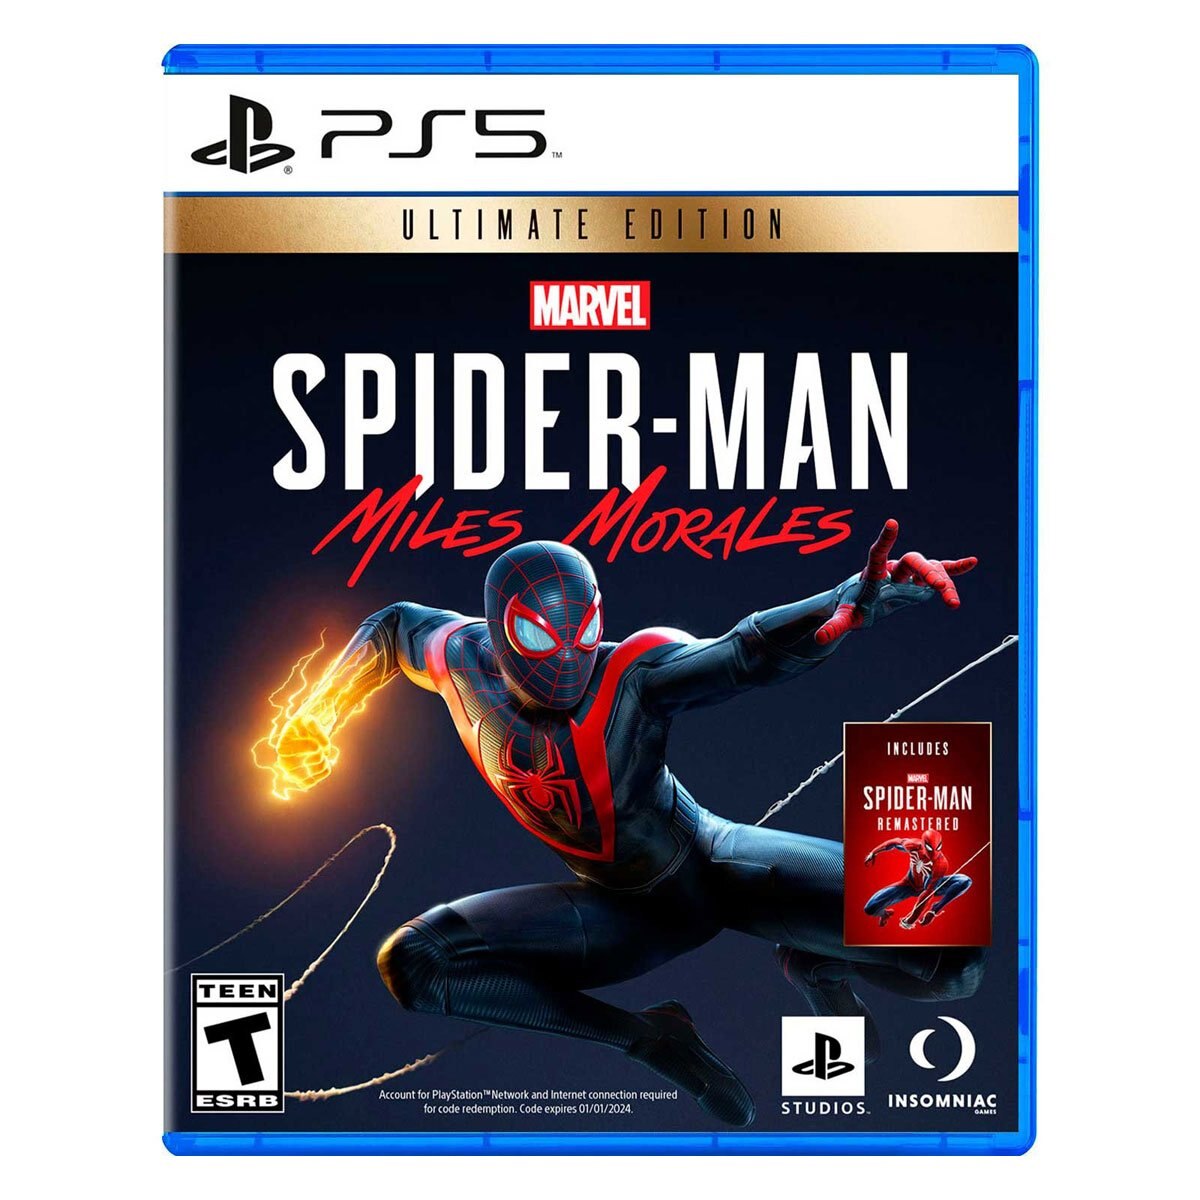 Sears tiene lo mejor en ps5-spider-man-ultimate-edition | sears.com.mx